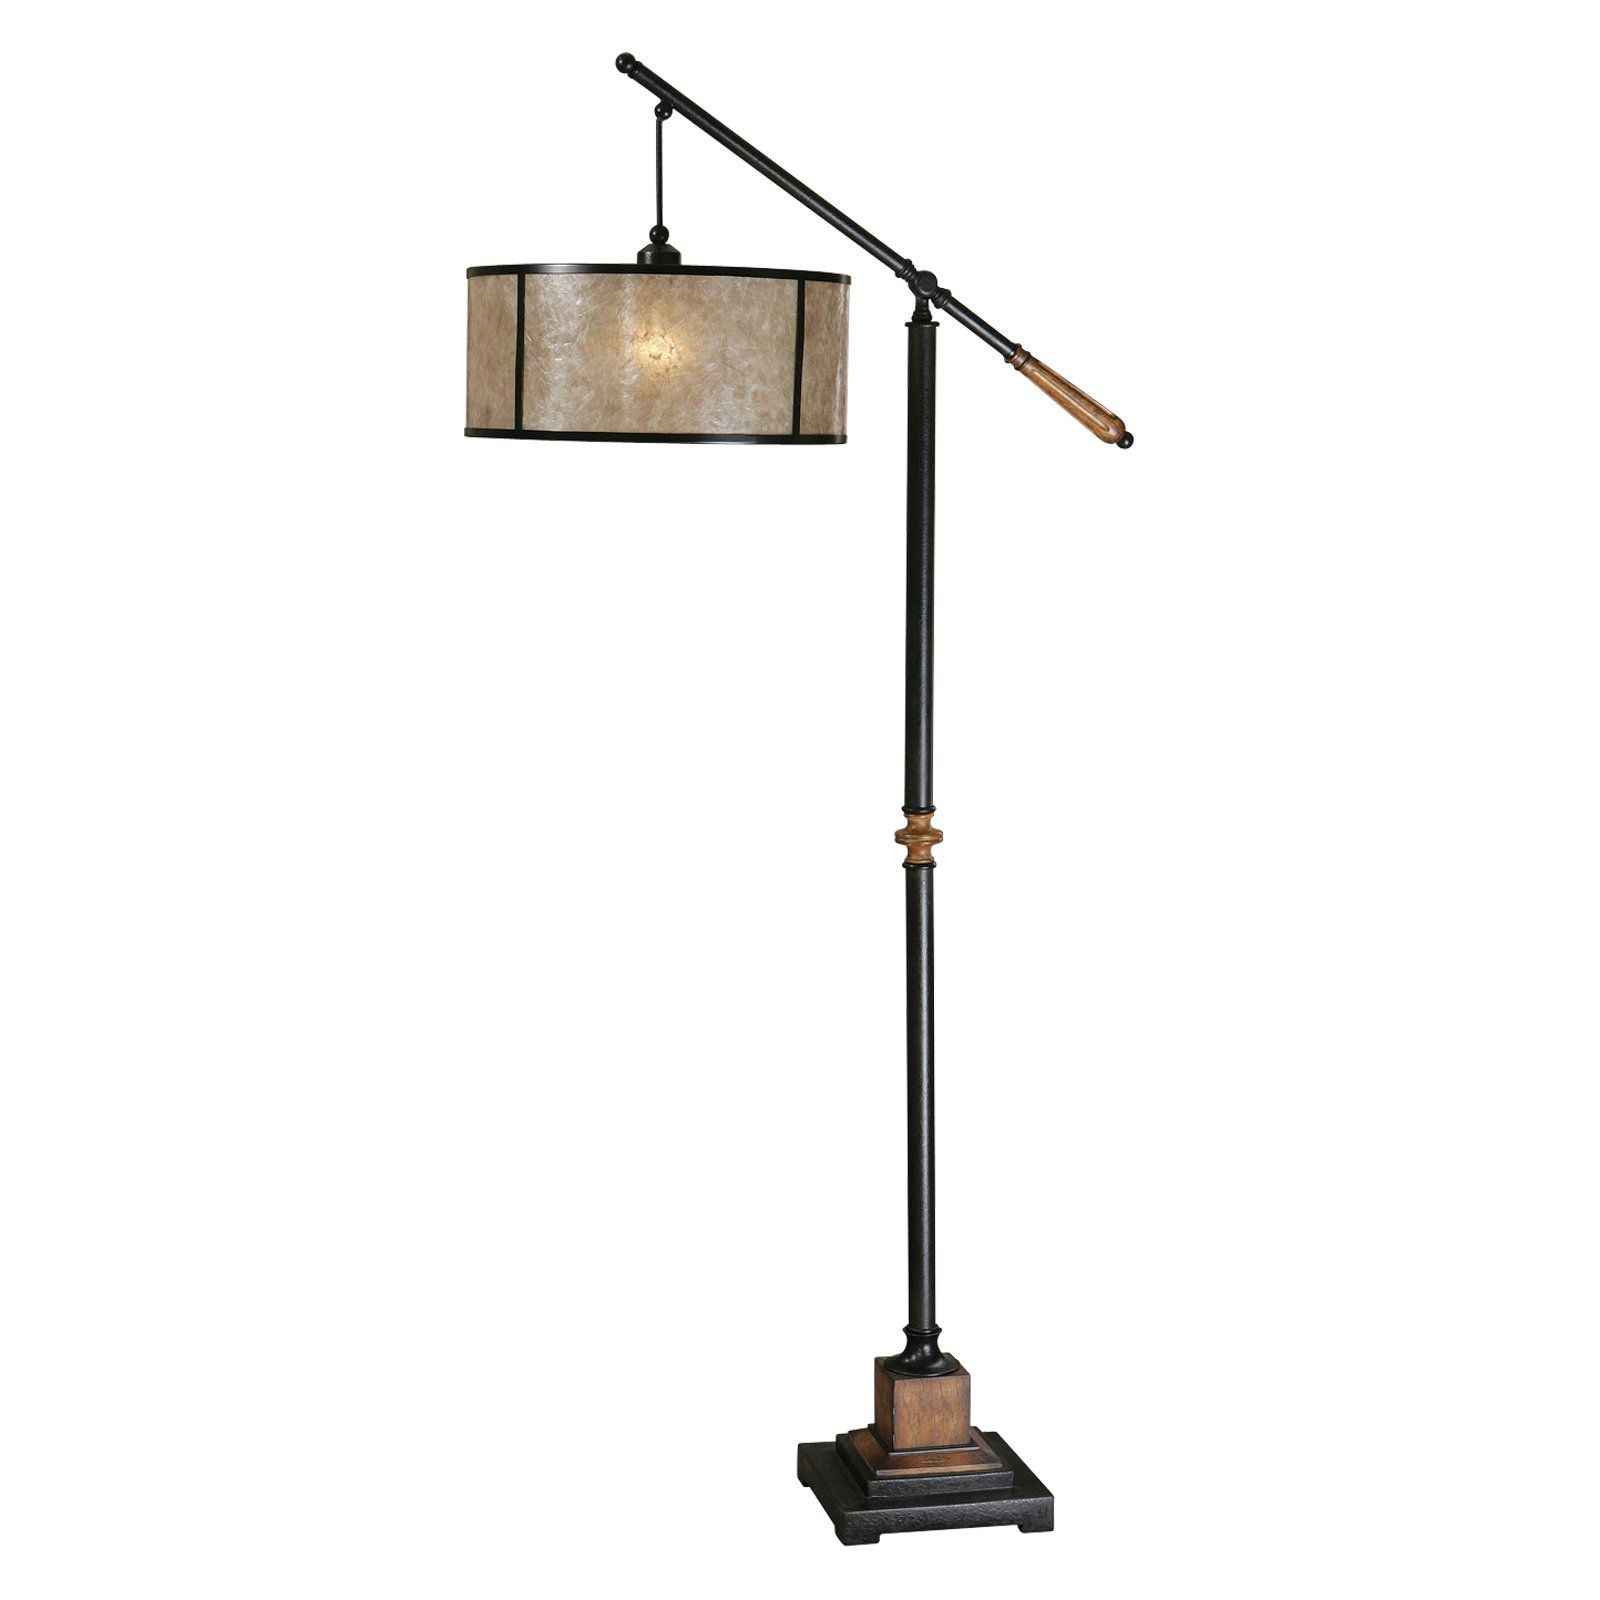 Chandelier Floor Lamps Images Home Fixtures Decoration Ideas Regarding Black Chandelier Standing Lamps (View 21 of 25)